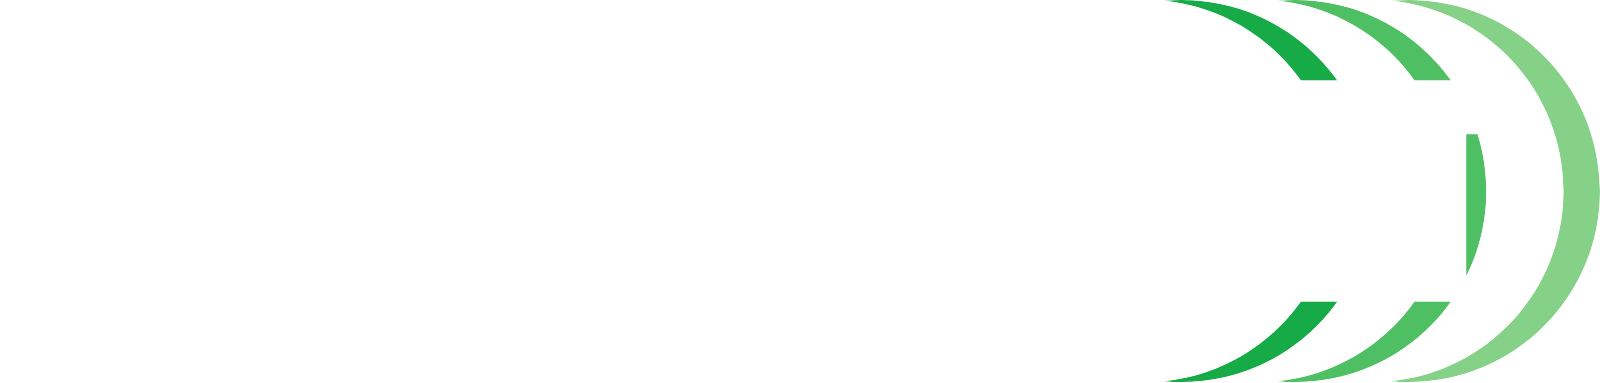 Hensoldt logo large for dark backgrounds (transparent PNG)